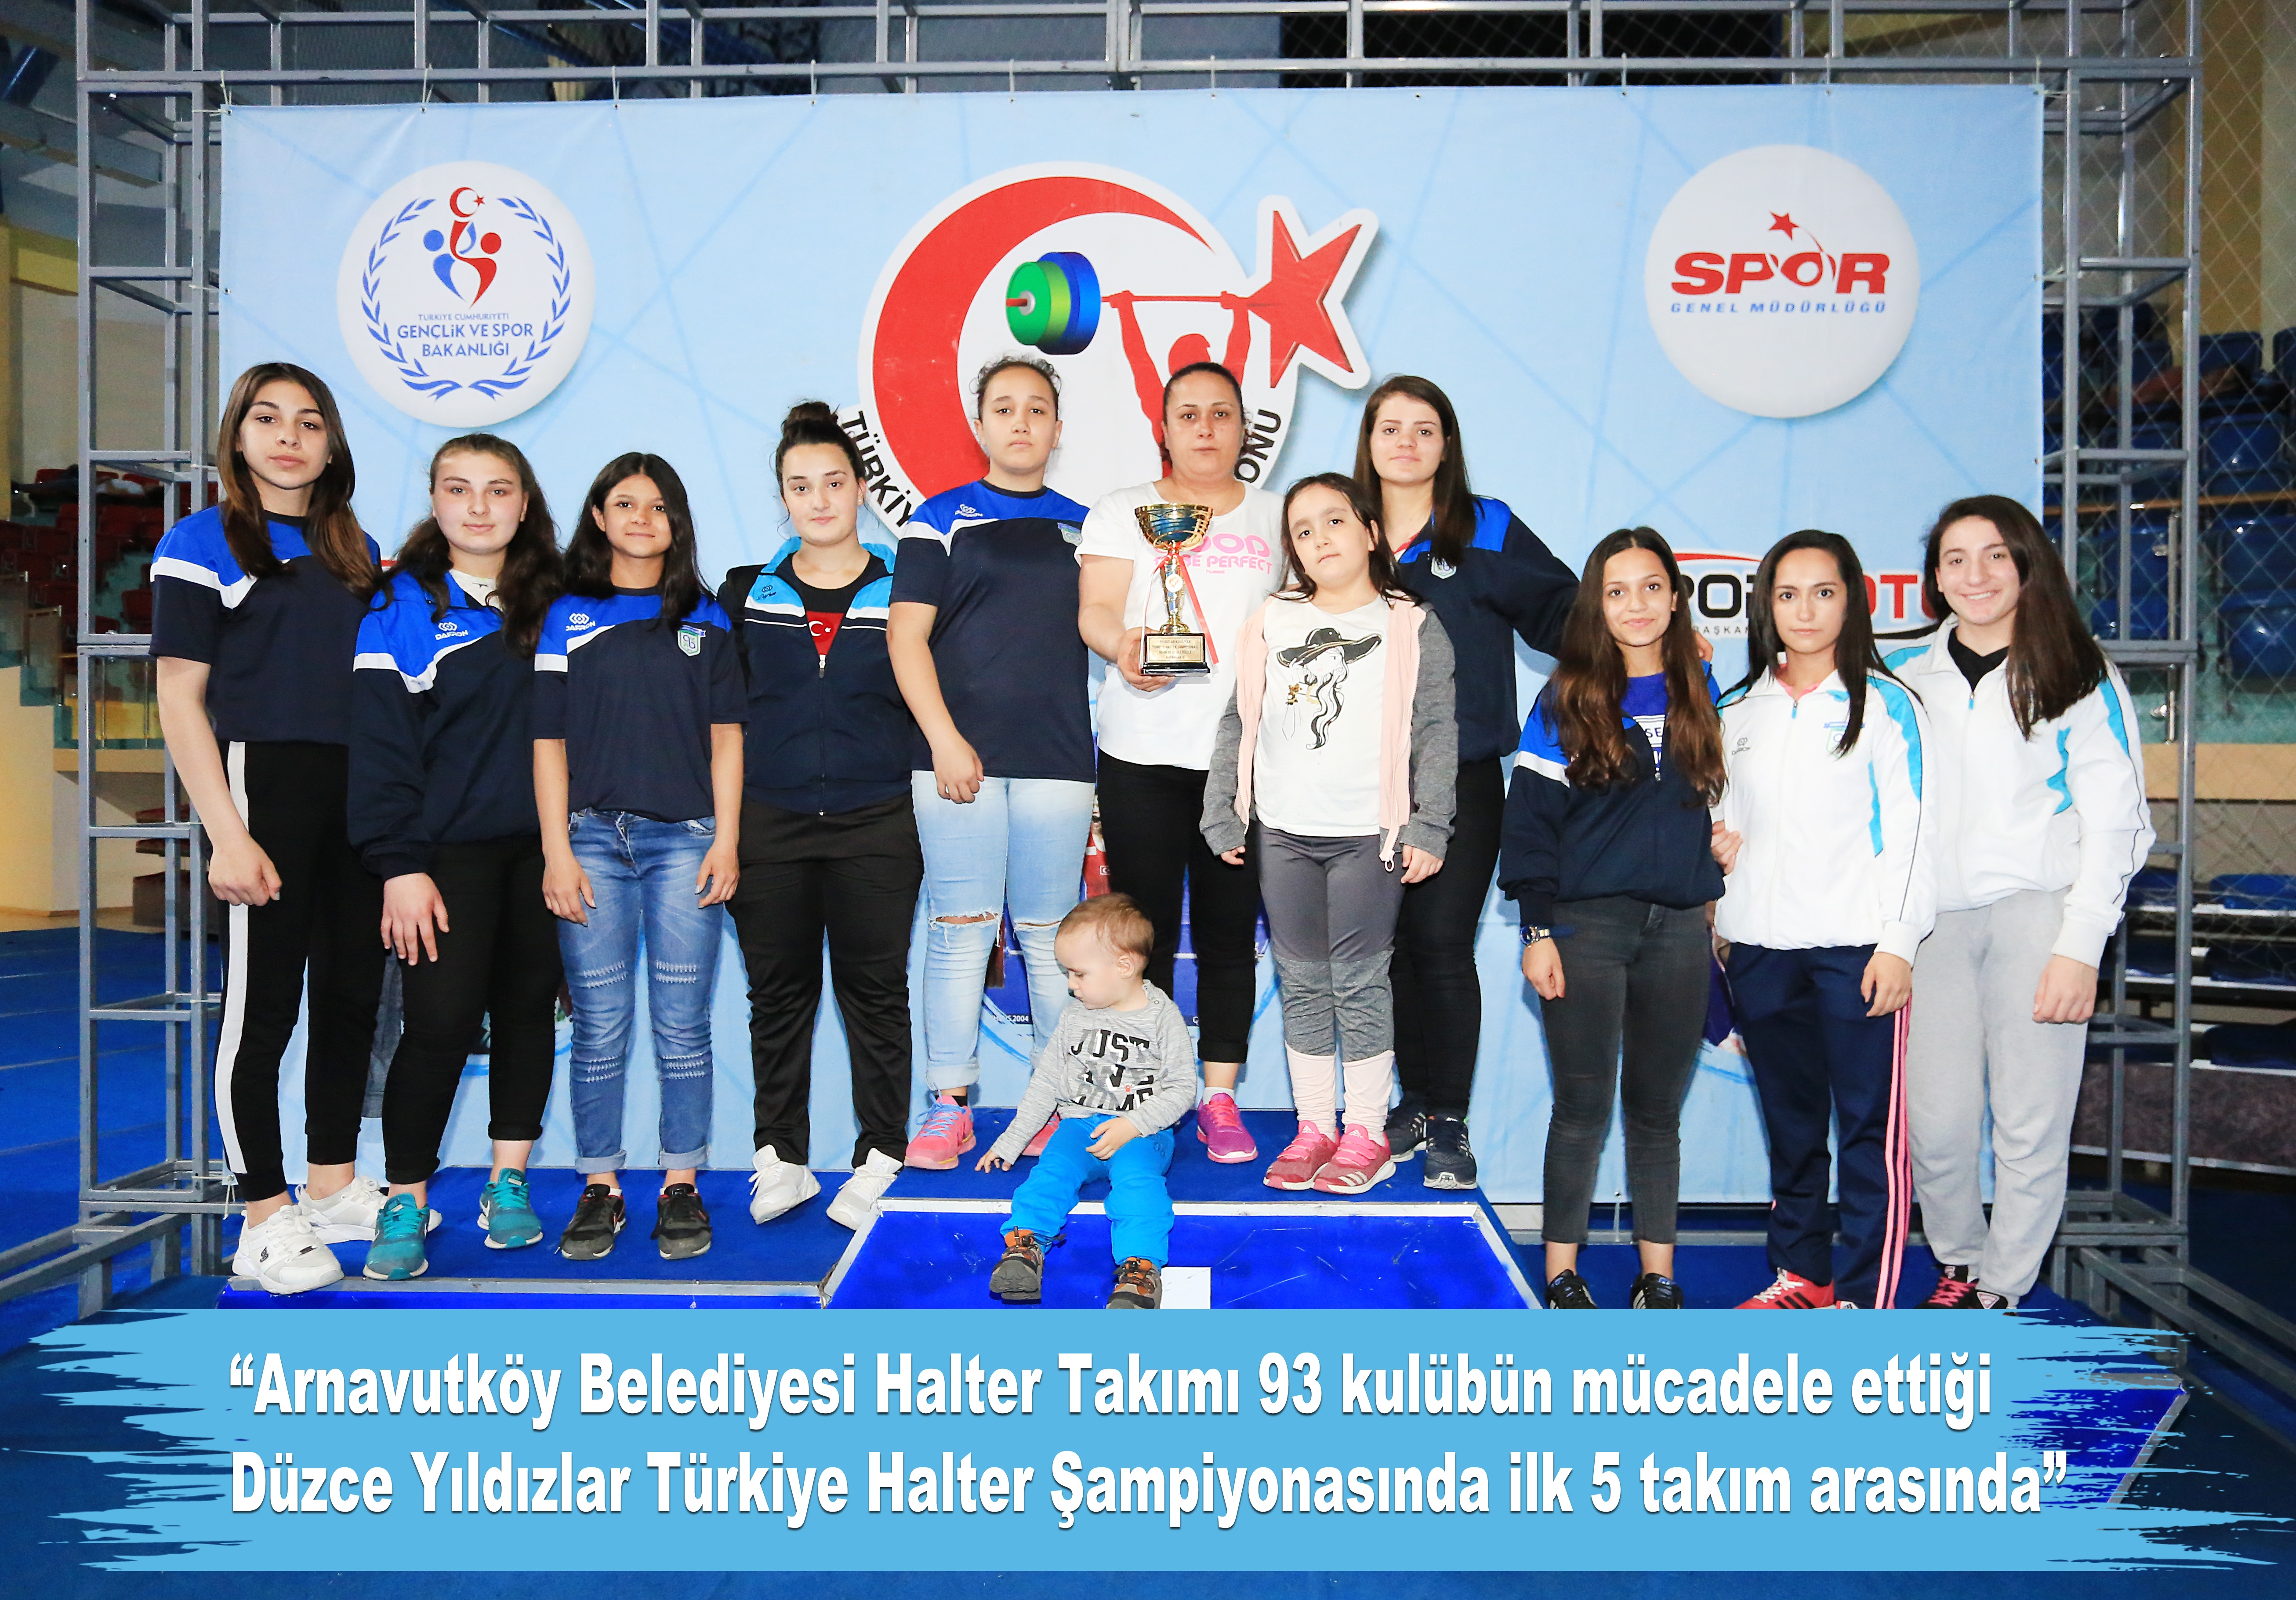 Arnavutköy Belediyesi Halter Takımı Bayanlar da Türkiye 5.liği Kazandı.